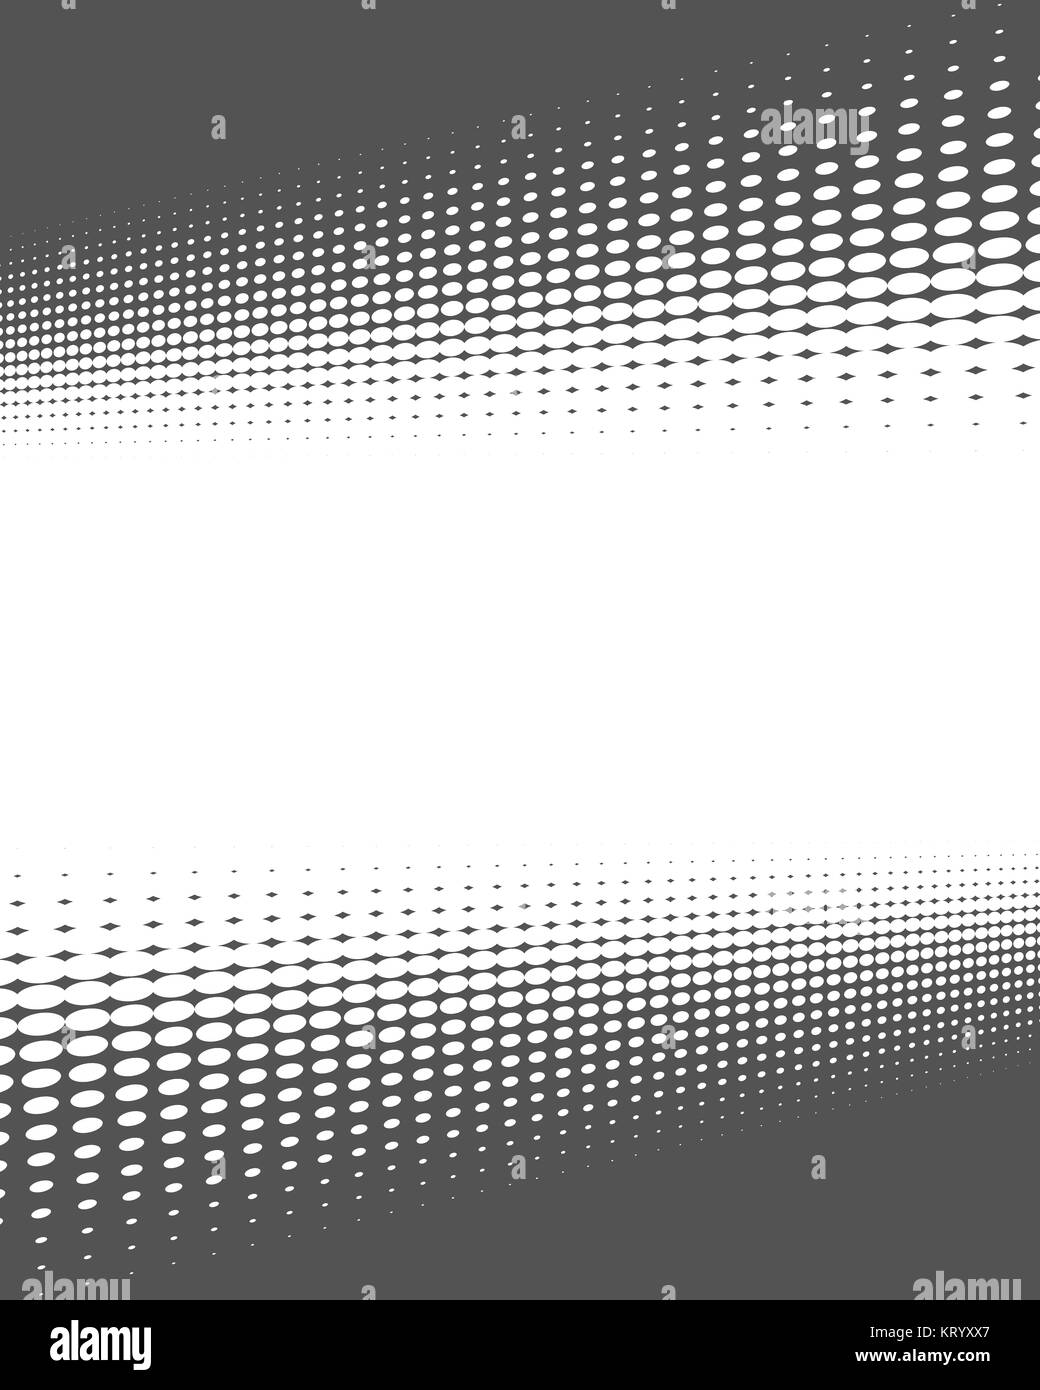 Hintergrund mit Rahmen aus verzerrten grauen Punkten und freier weißer Fläche Stock Photo